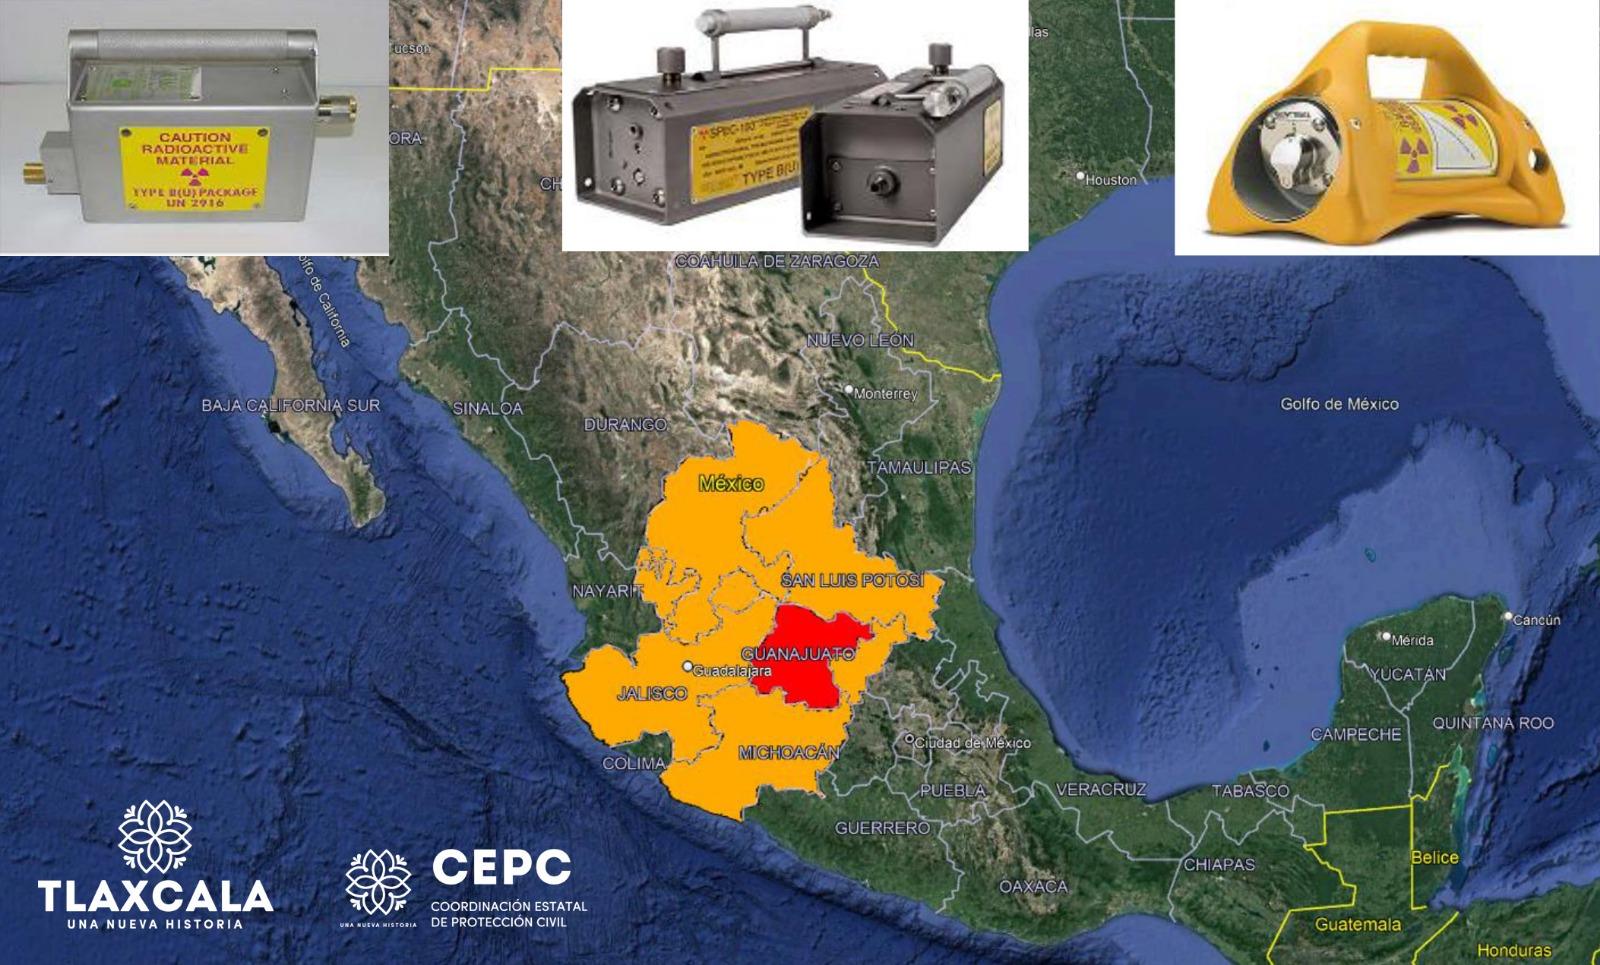 Alerta CNPC por fuente radiactiva robada en territorio nacional